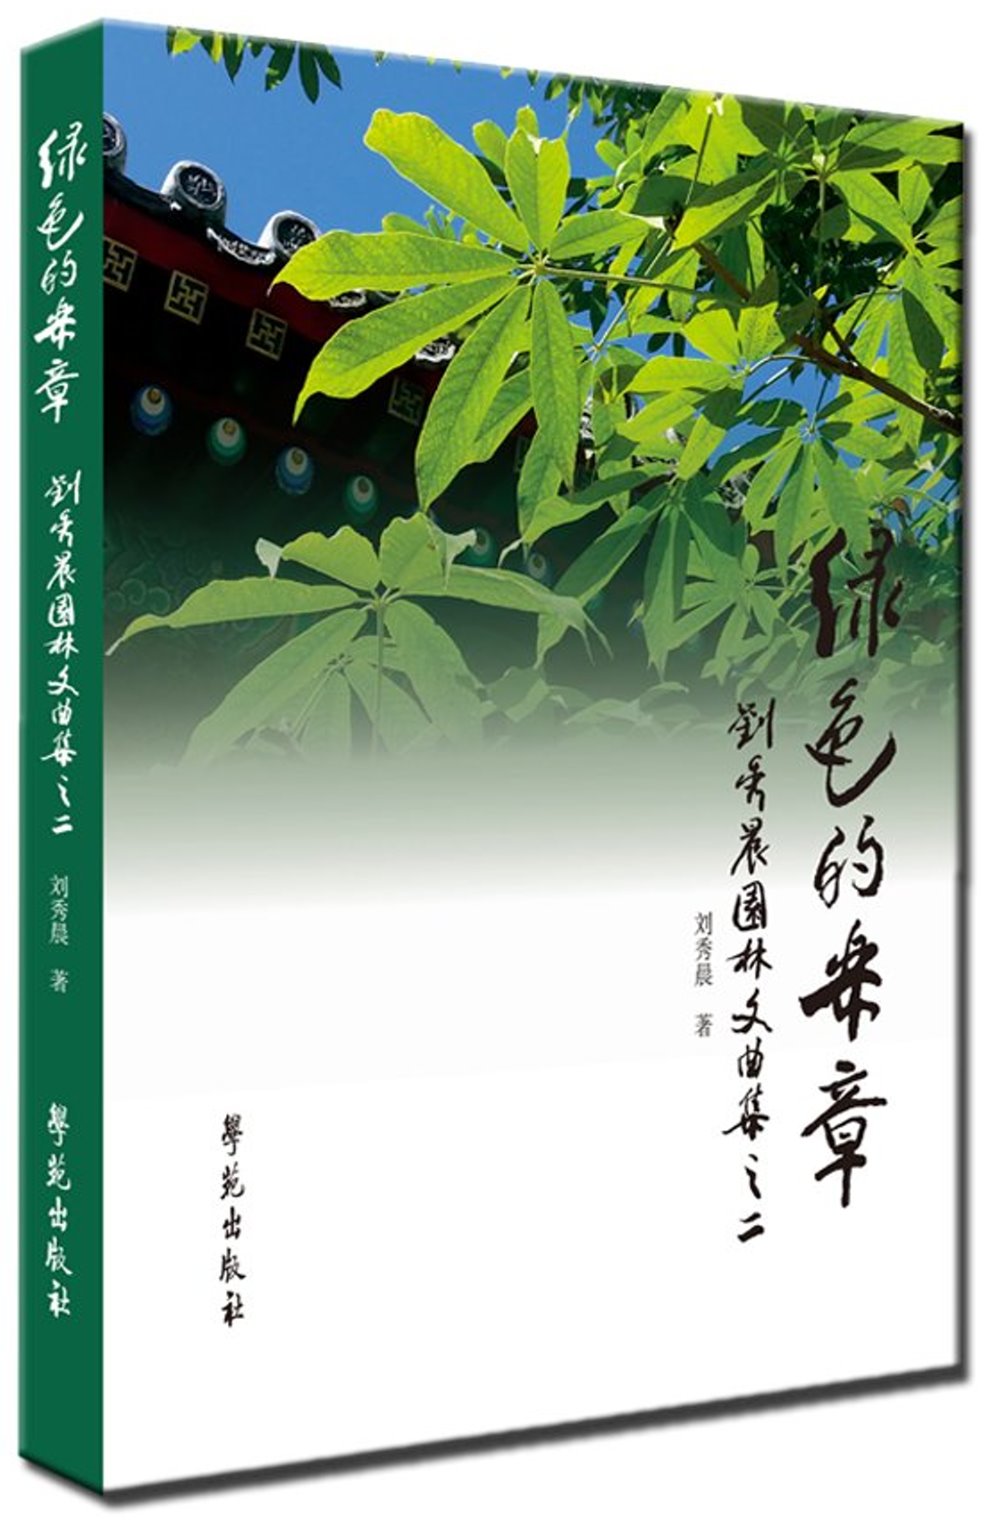 綠色的樂章：劉秀晨園林文曲集之二